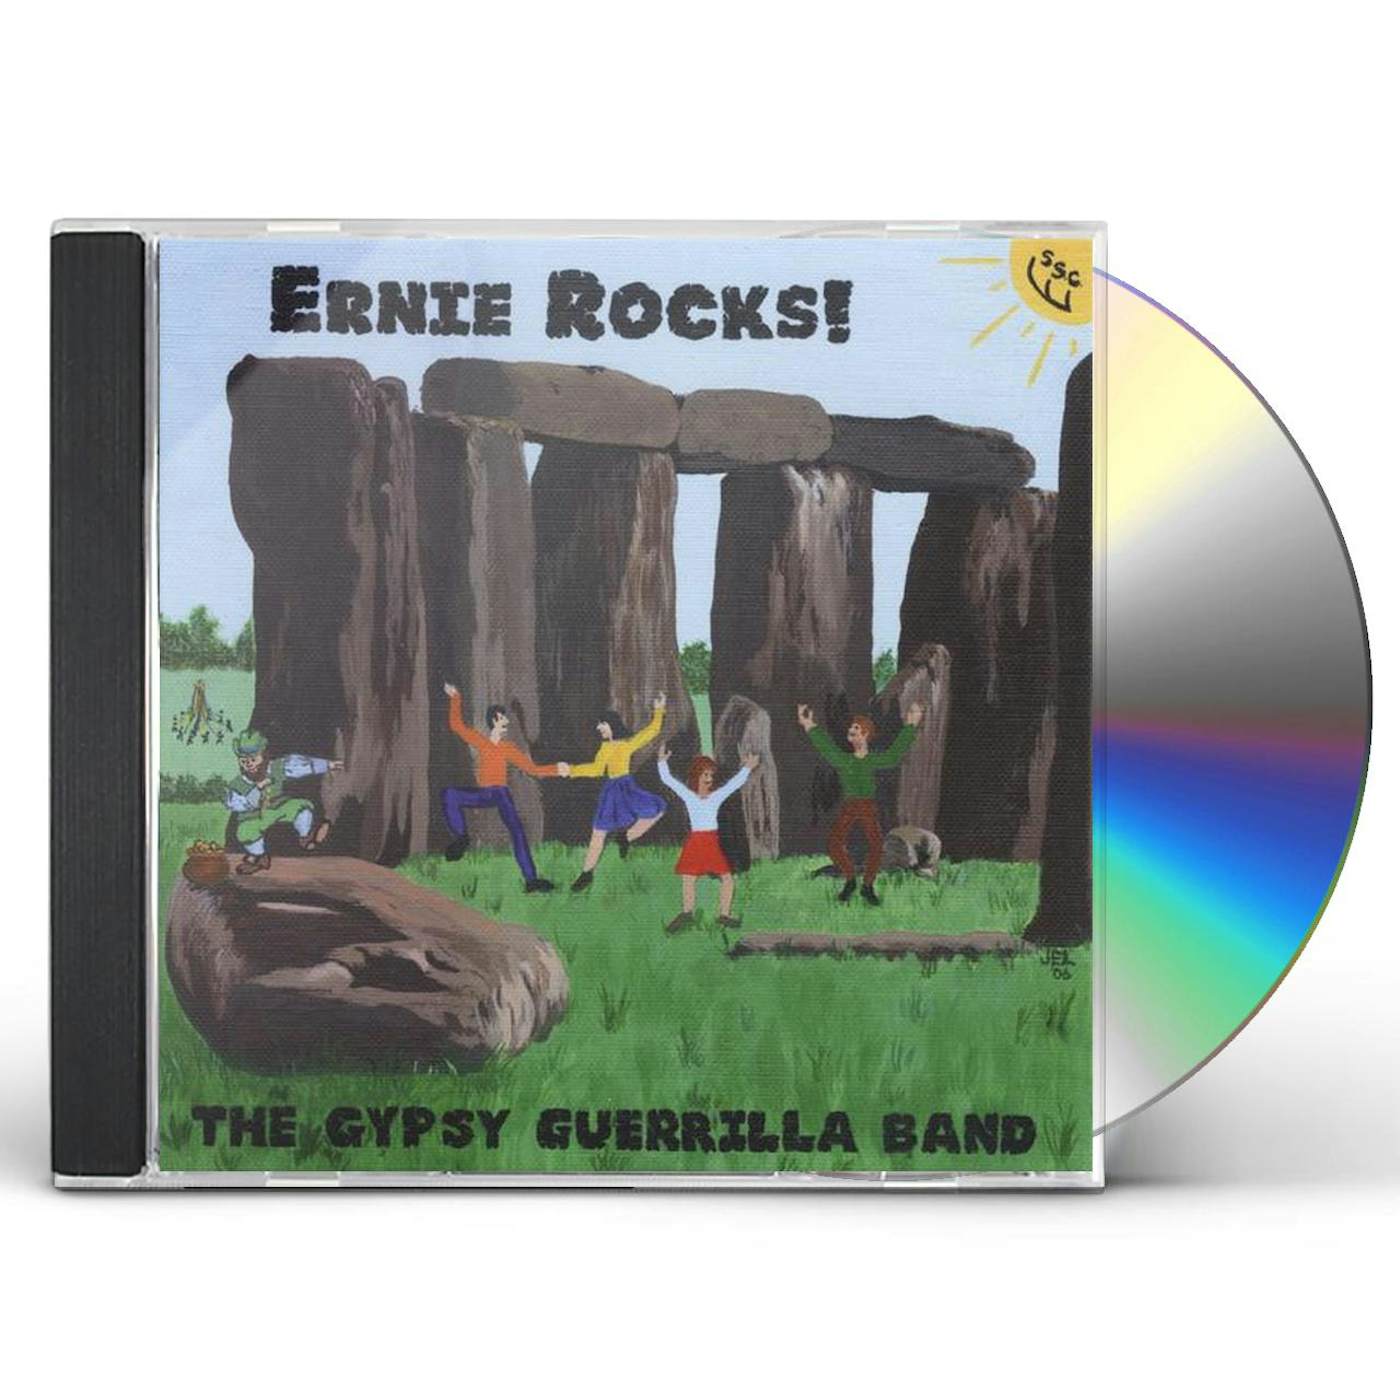 Gypsy Guerrilla Band ERNIE ROCKS! CD